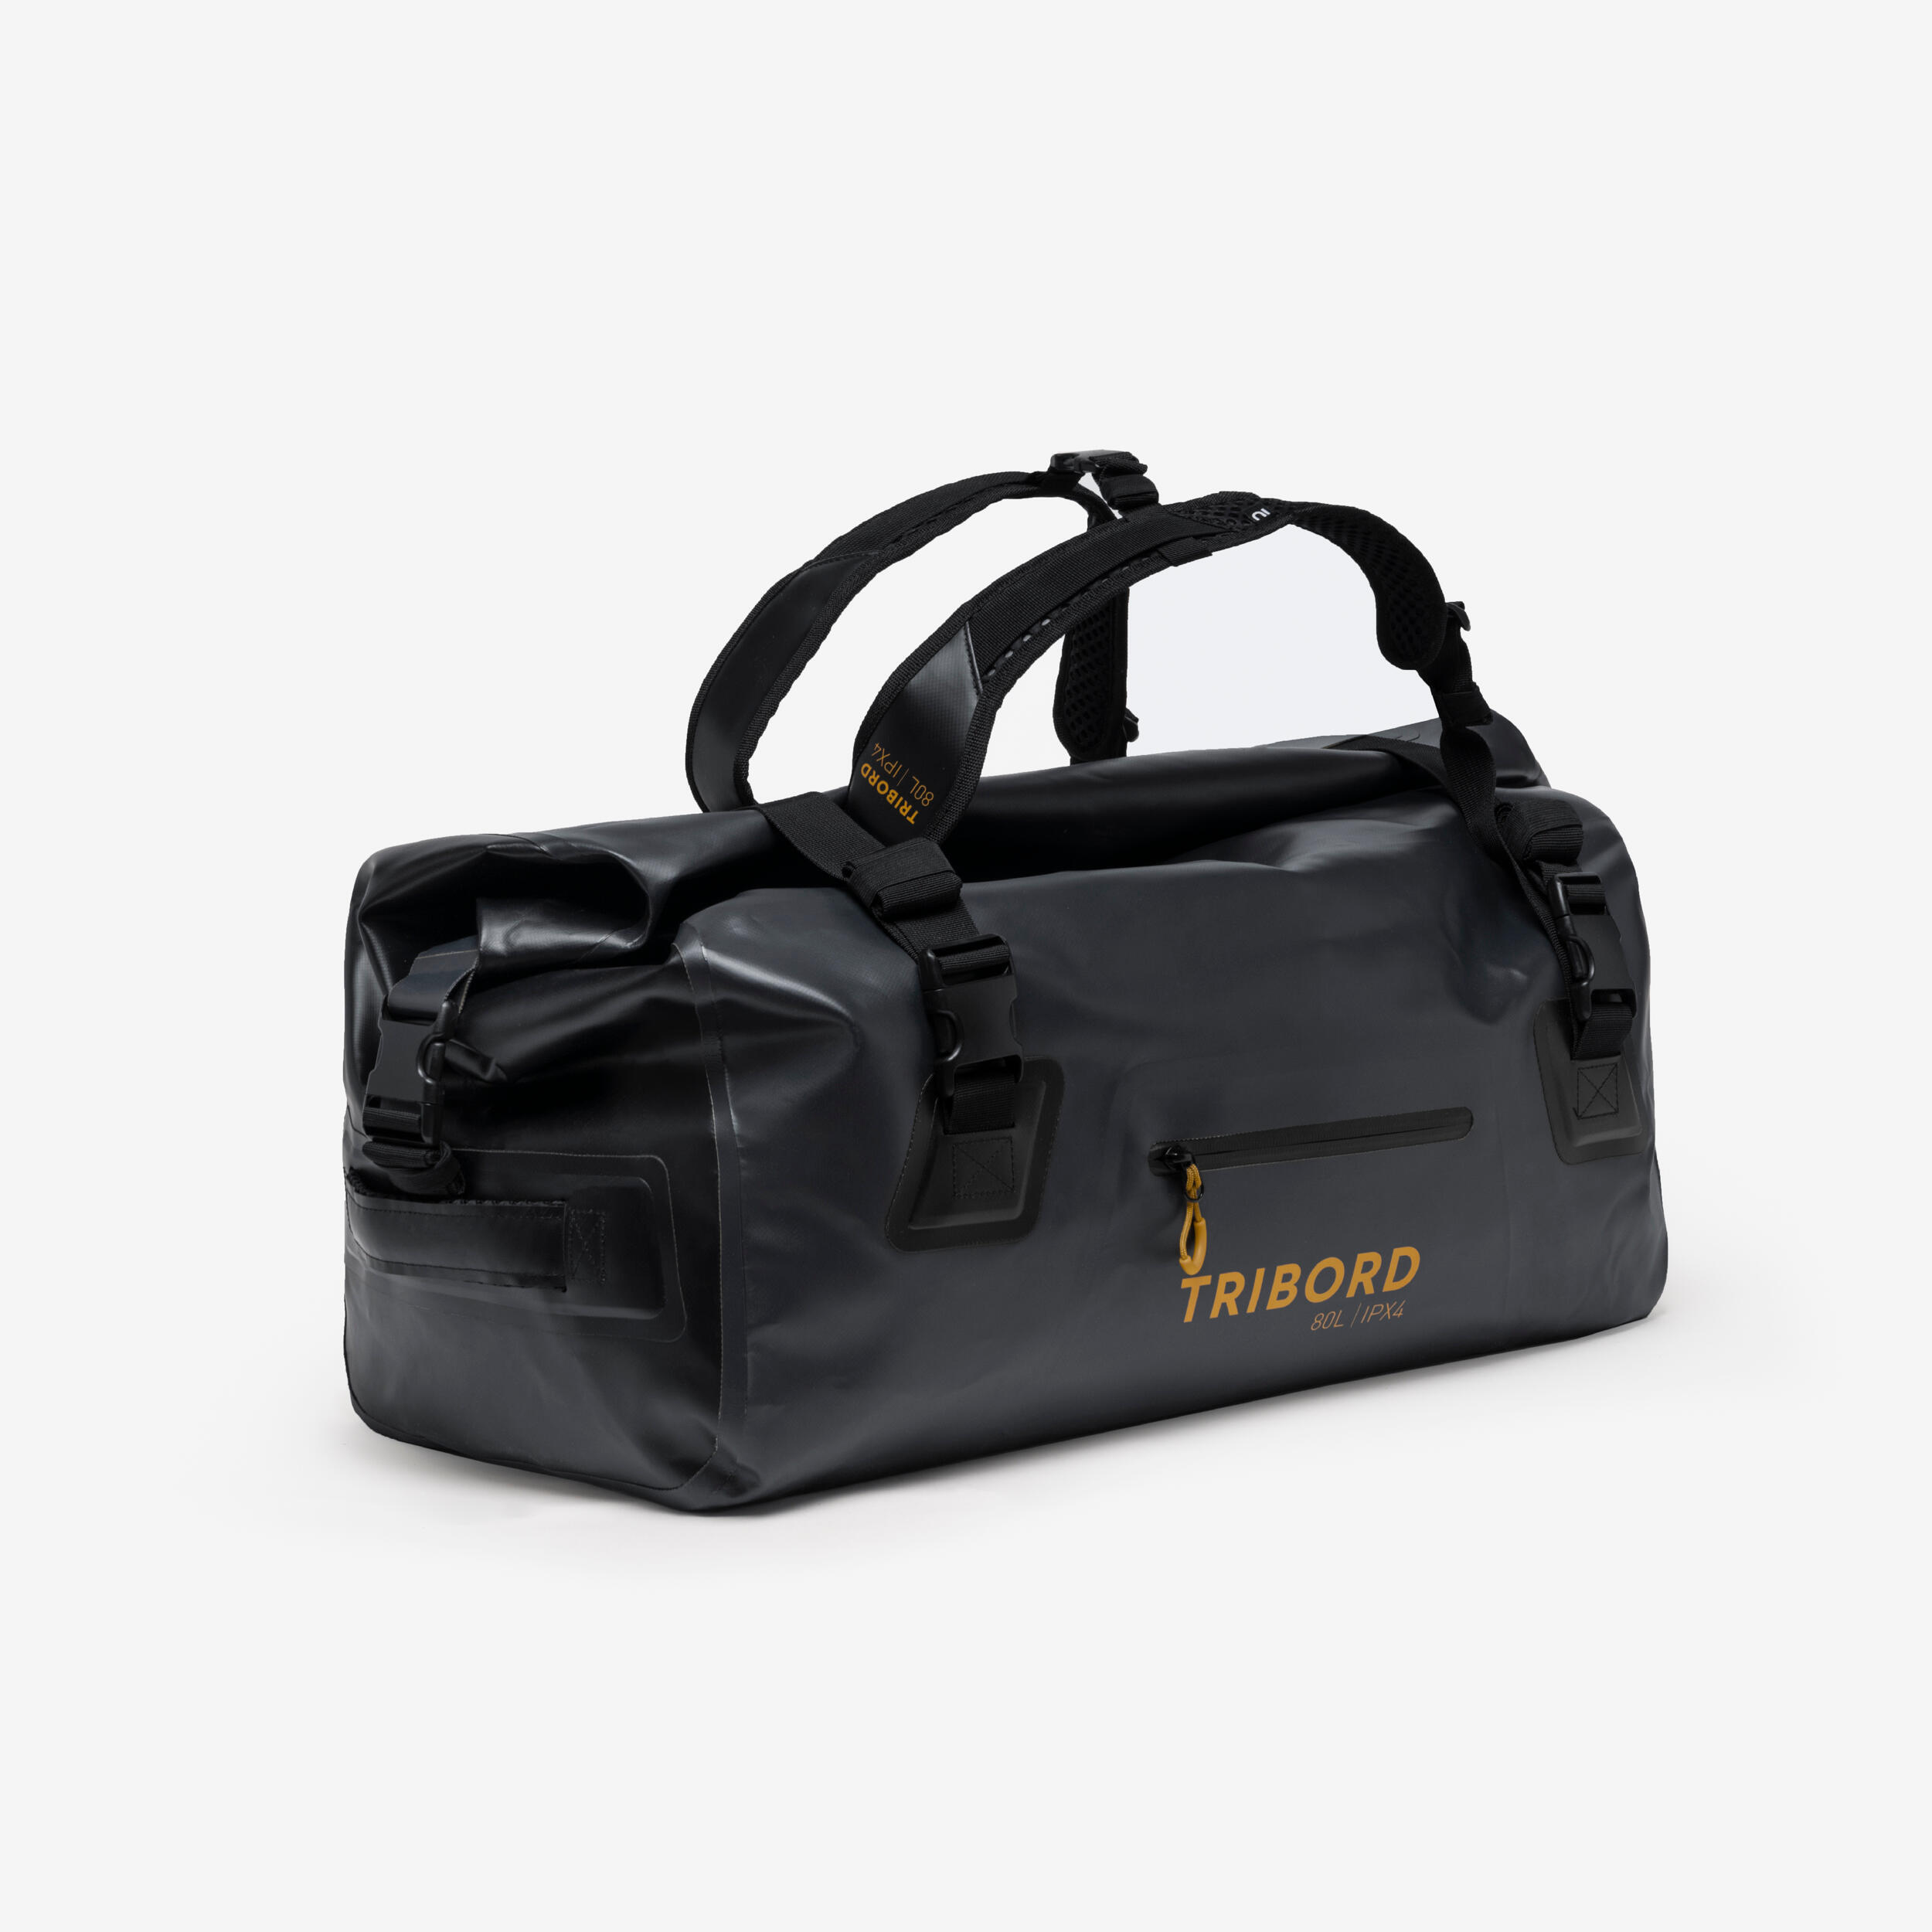 Waterproof duffle bag - 80 L travel bag Anthracite black 2/16